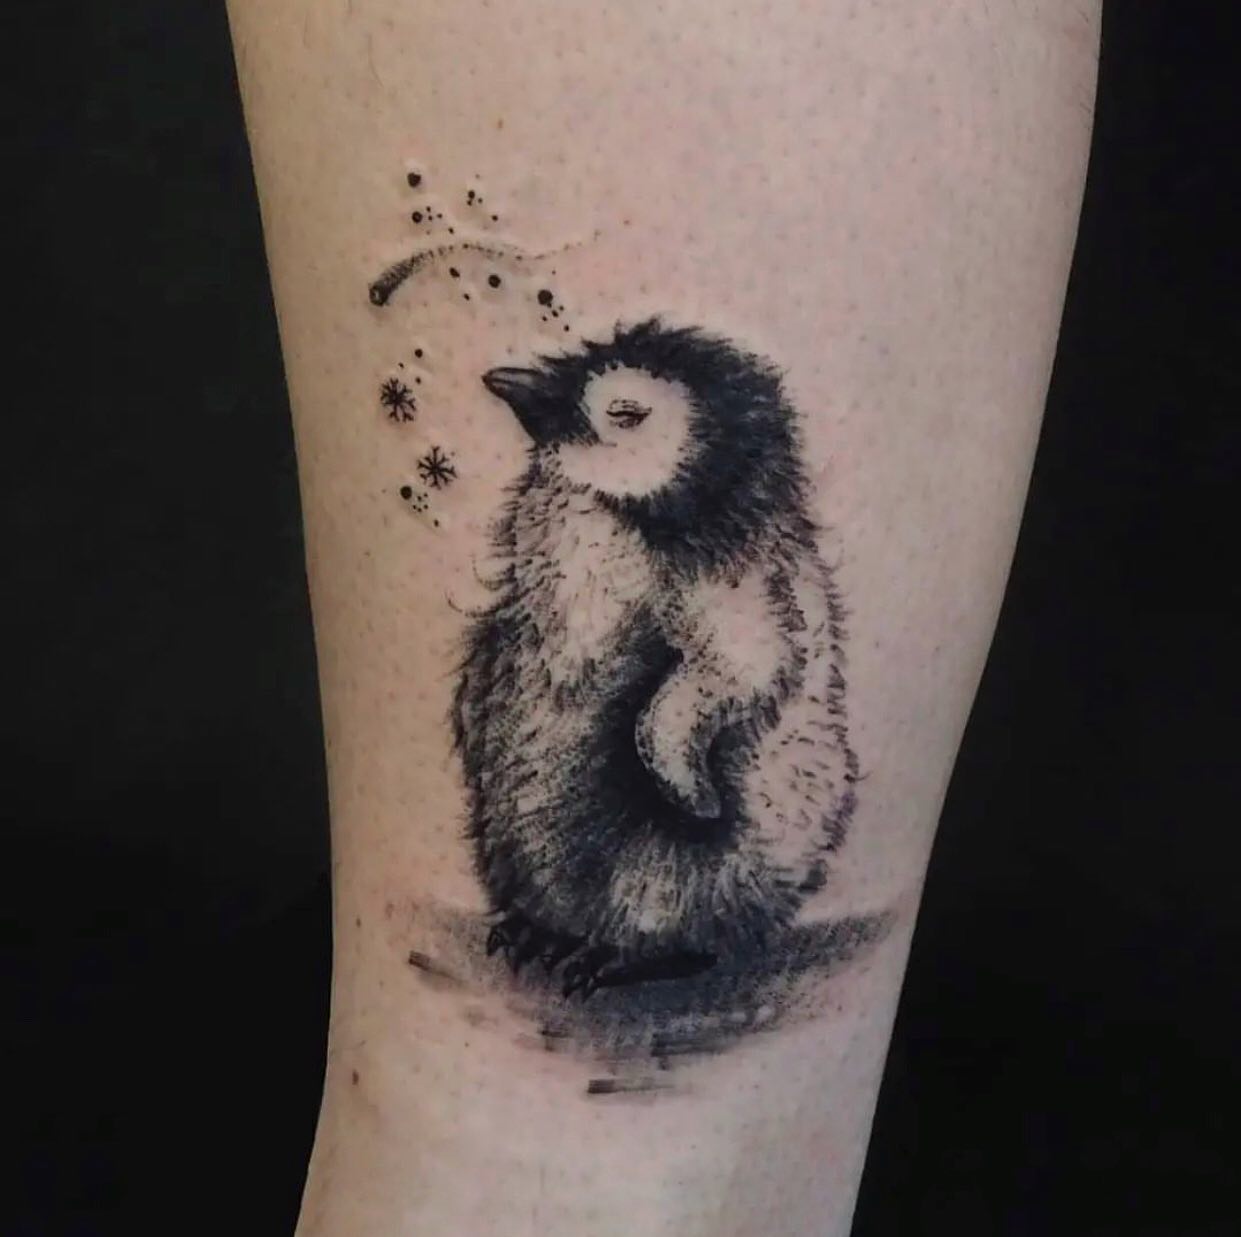 Tatuaje de pingüino bebé.